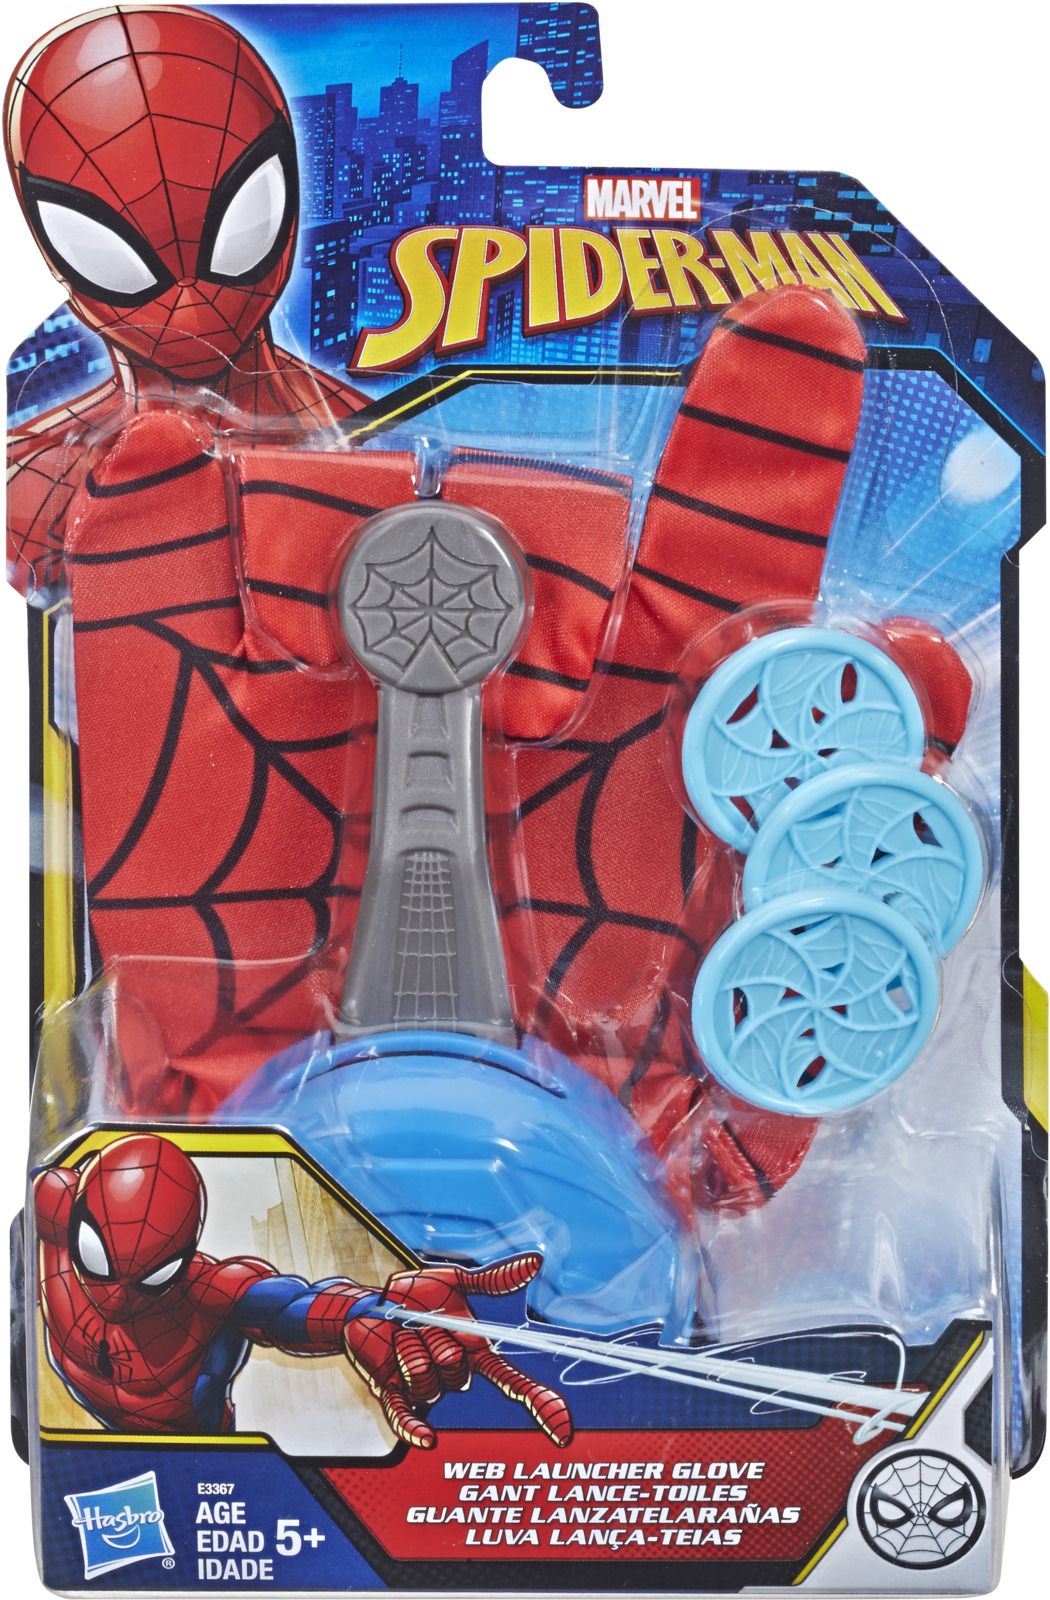   Spider-Man Titan Heroes Series 